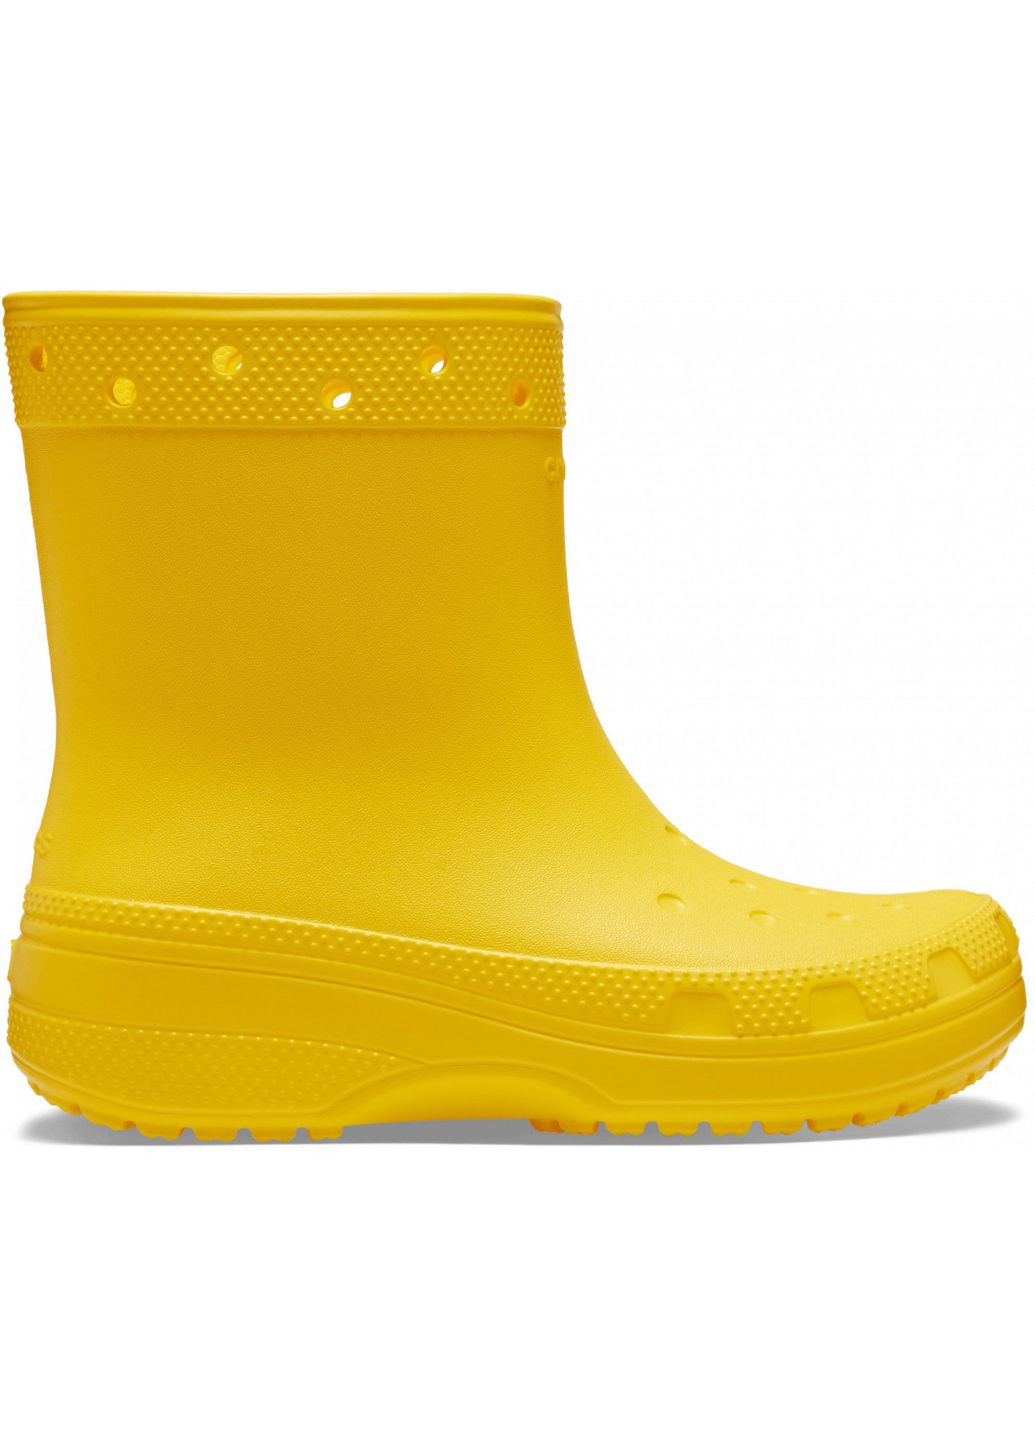 Желтые резиновые сапоги classic rain boot /m4w6/23 см sunflower 208363 Crocs